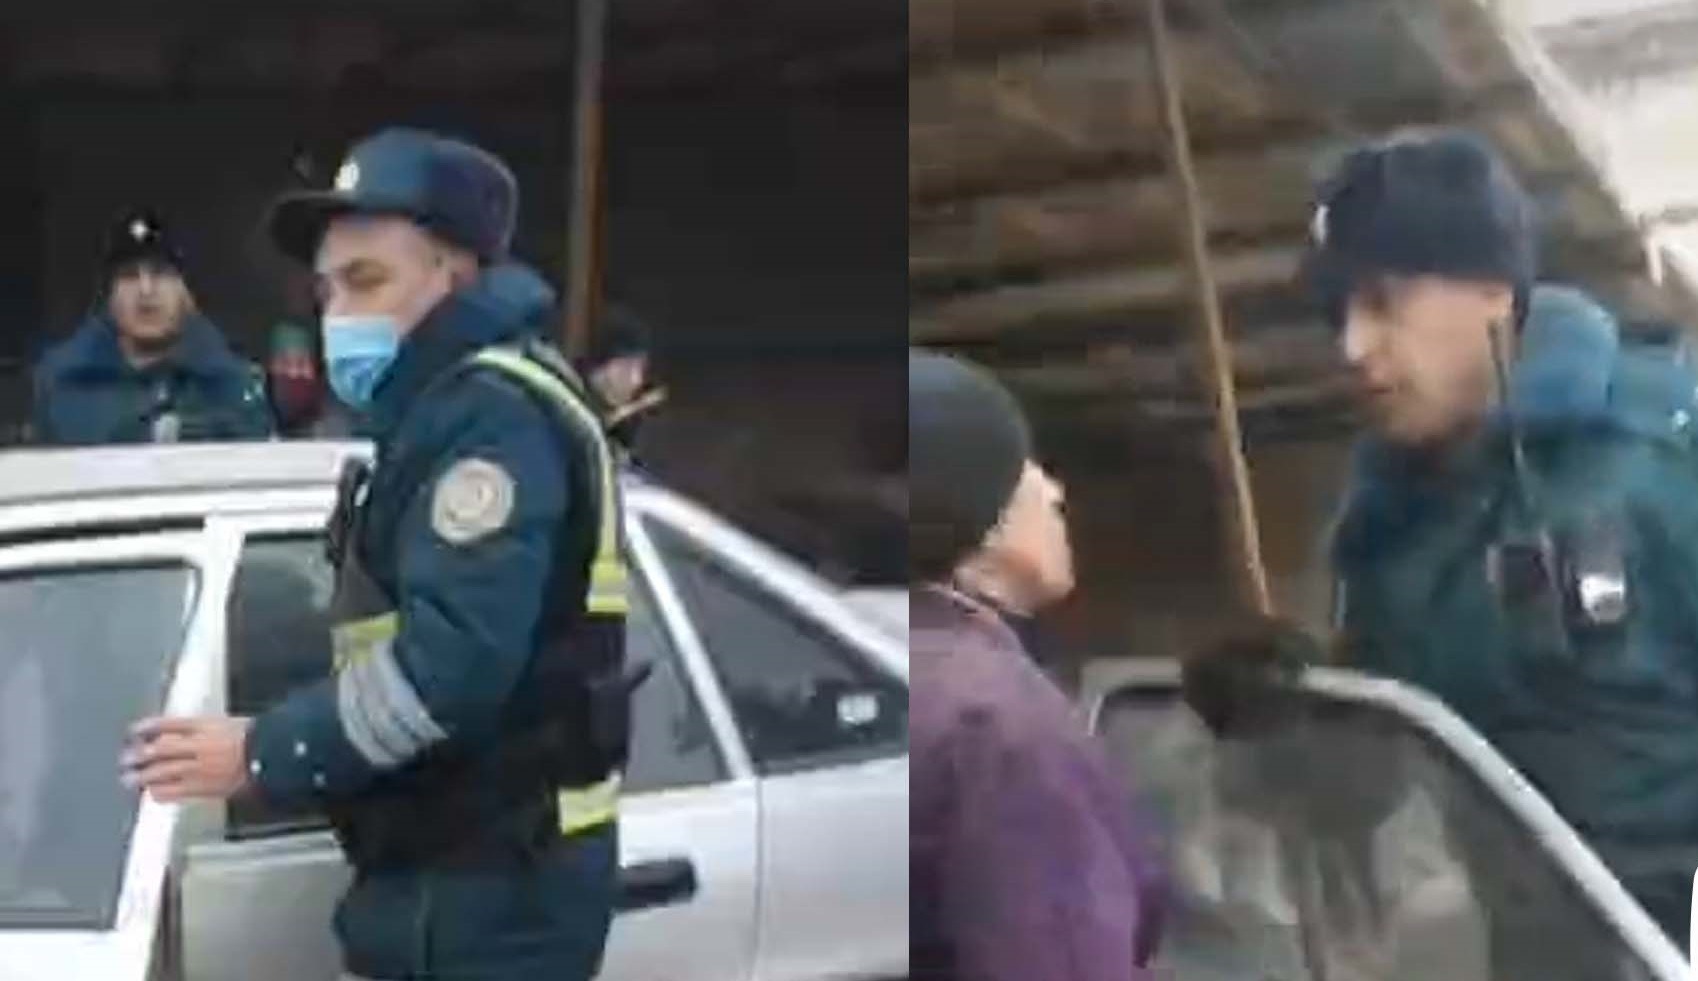 В Кашкадарье сотрудник ГАИ поплатился за то, что нагрубил гражданам